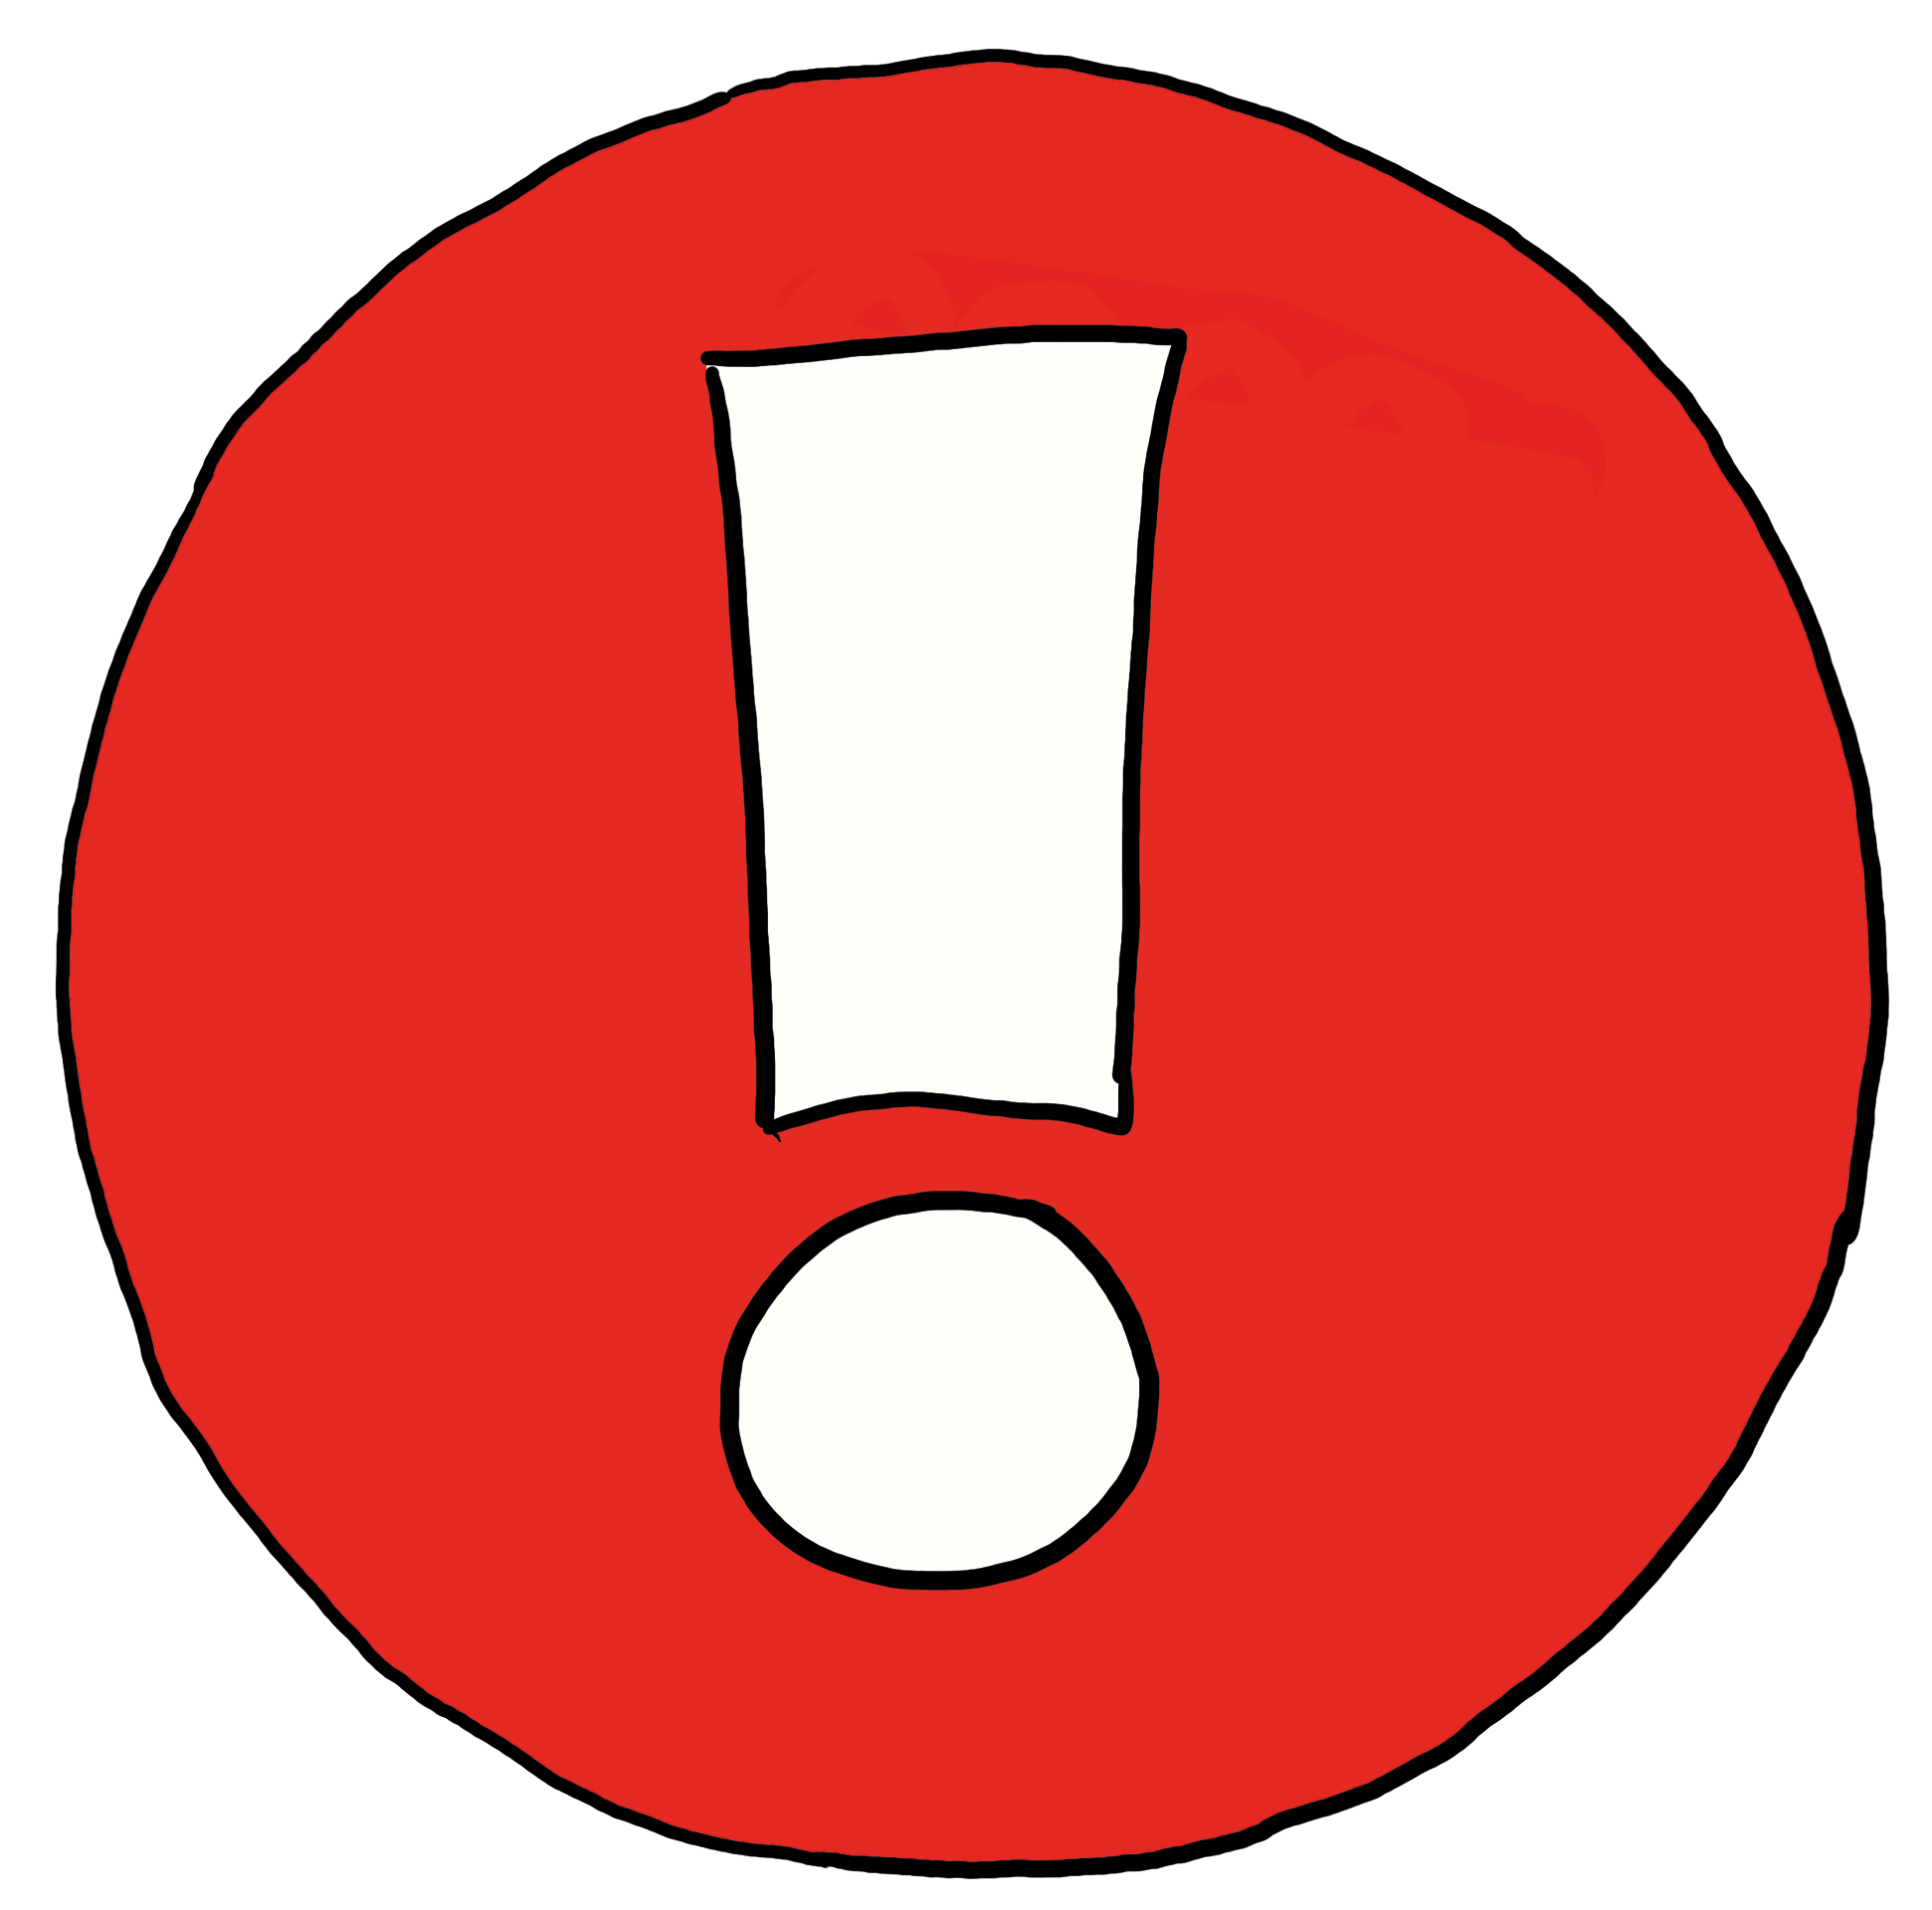 Ein weißes Ausrufezeichen auf einem roten Kreis - Symbol für Achtung